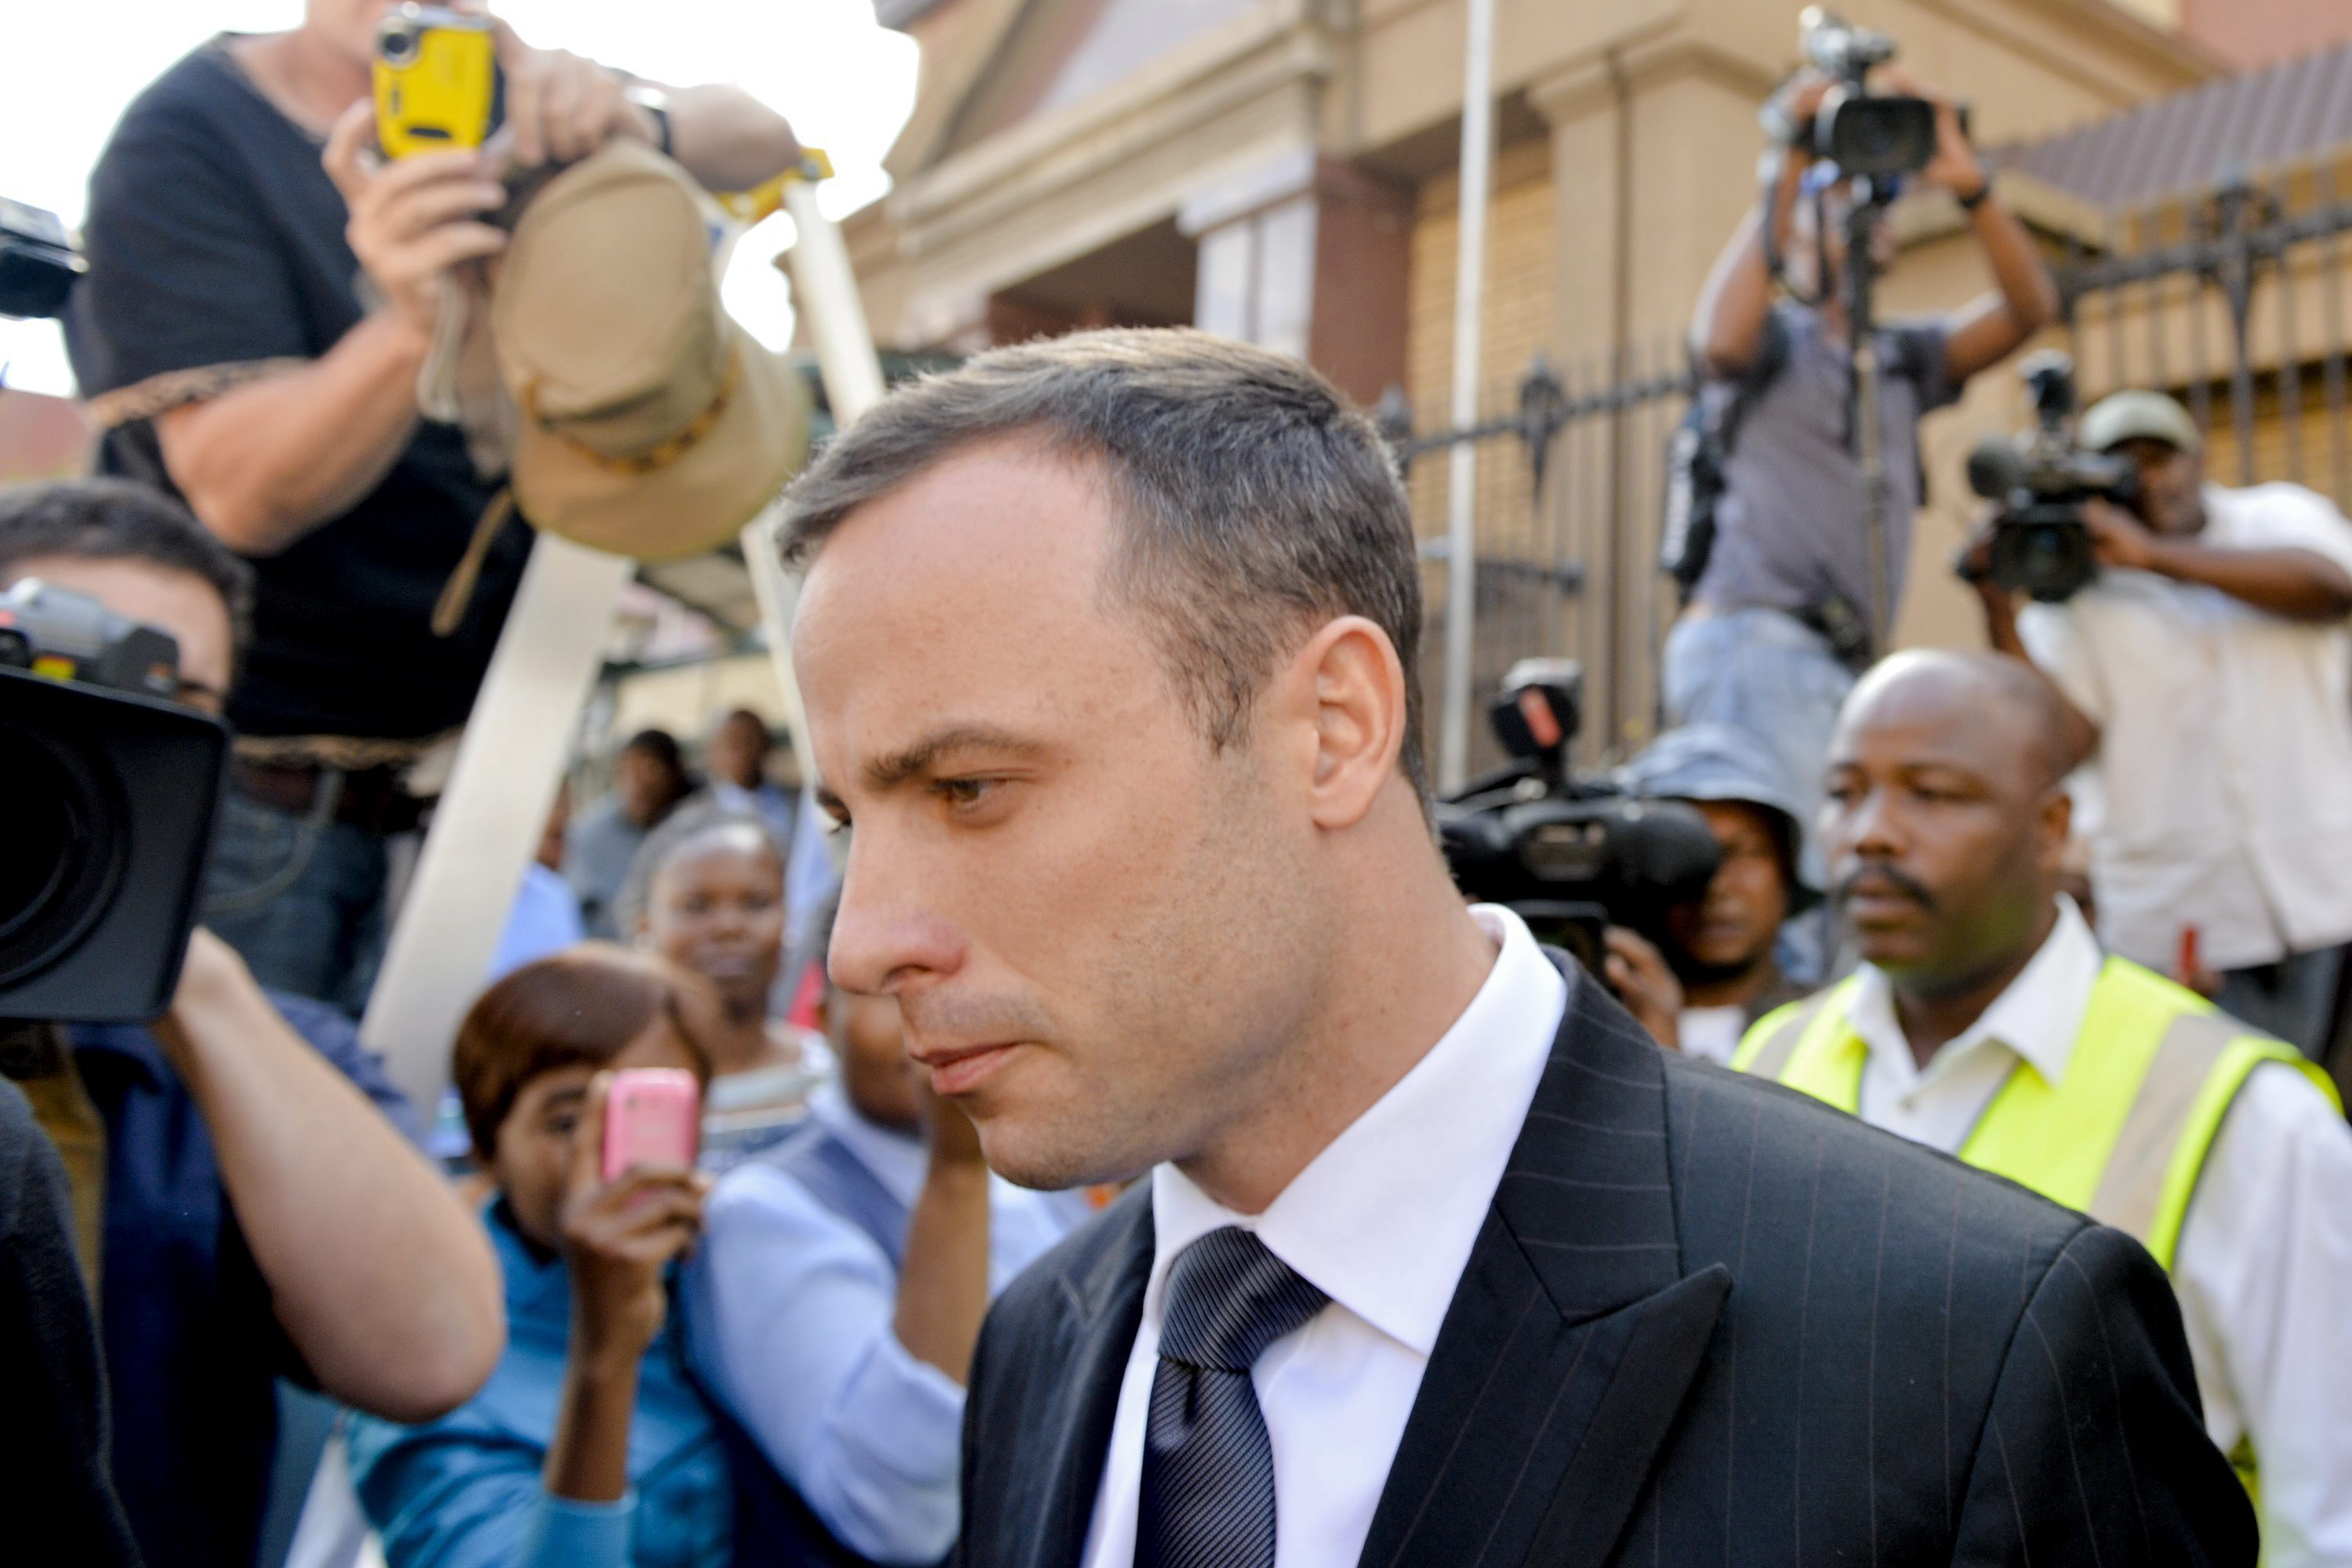 El fiscal no cree en la versión de Pistorius y él afirma que la Policía alteró pruebas